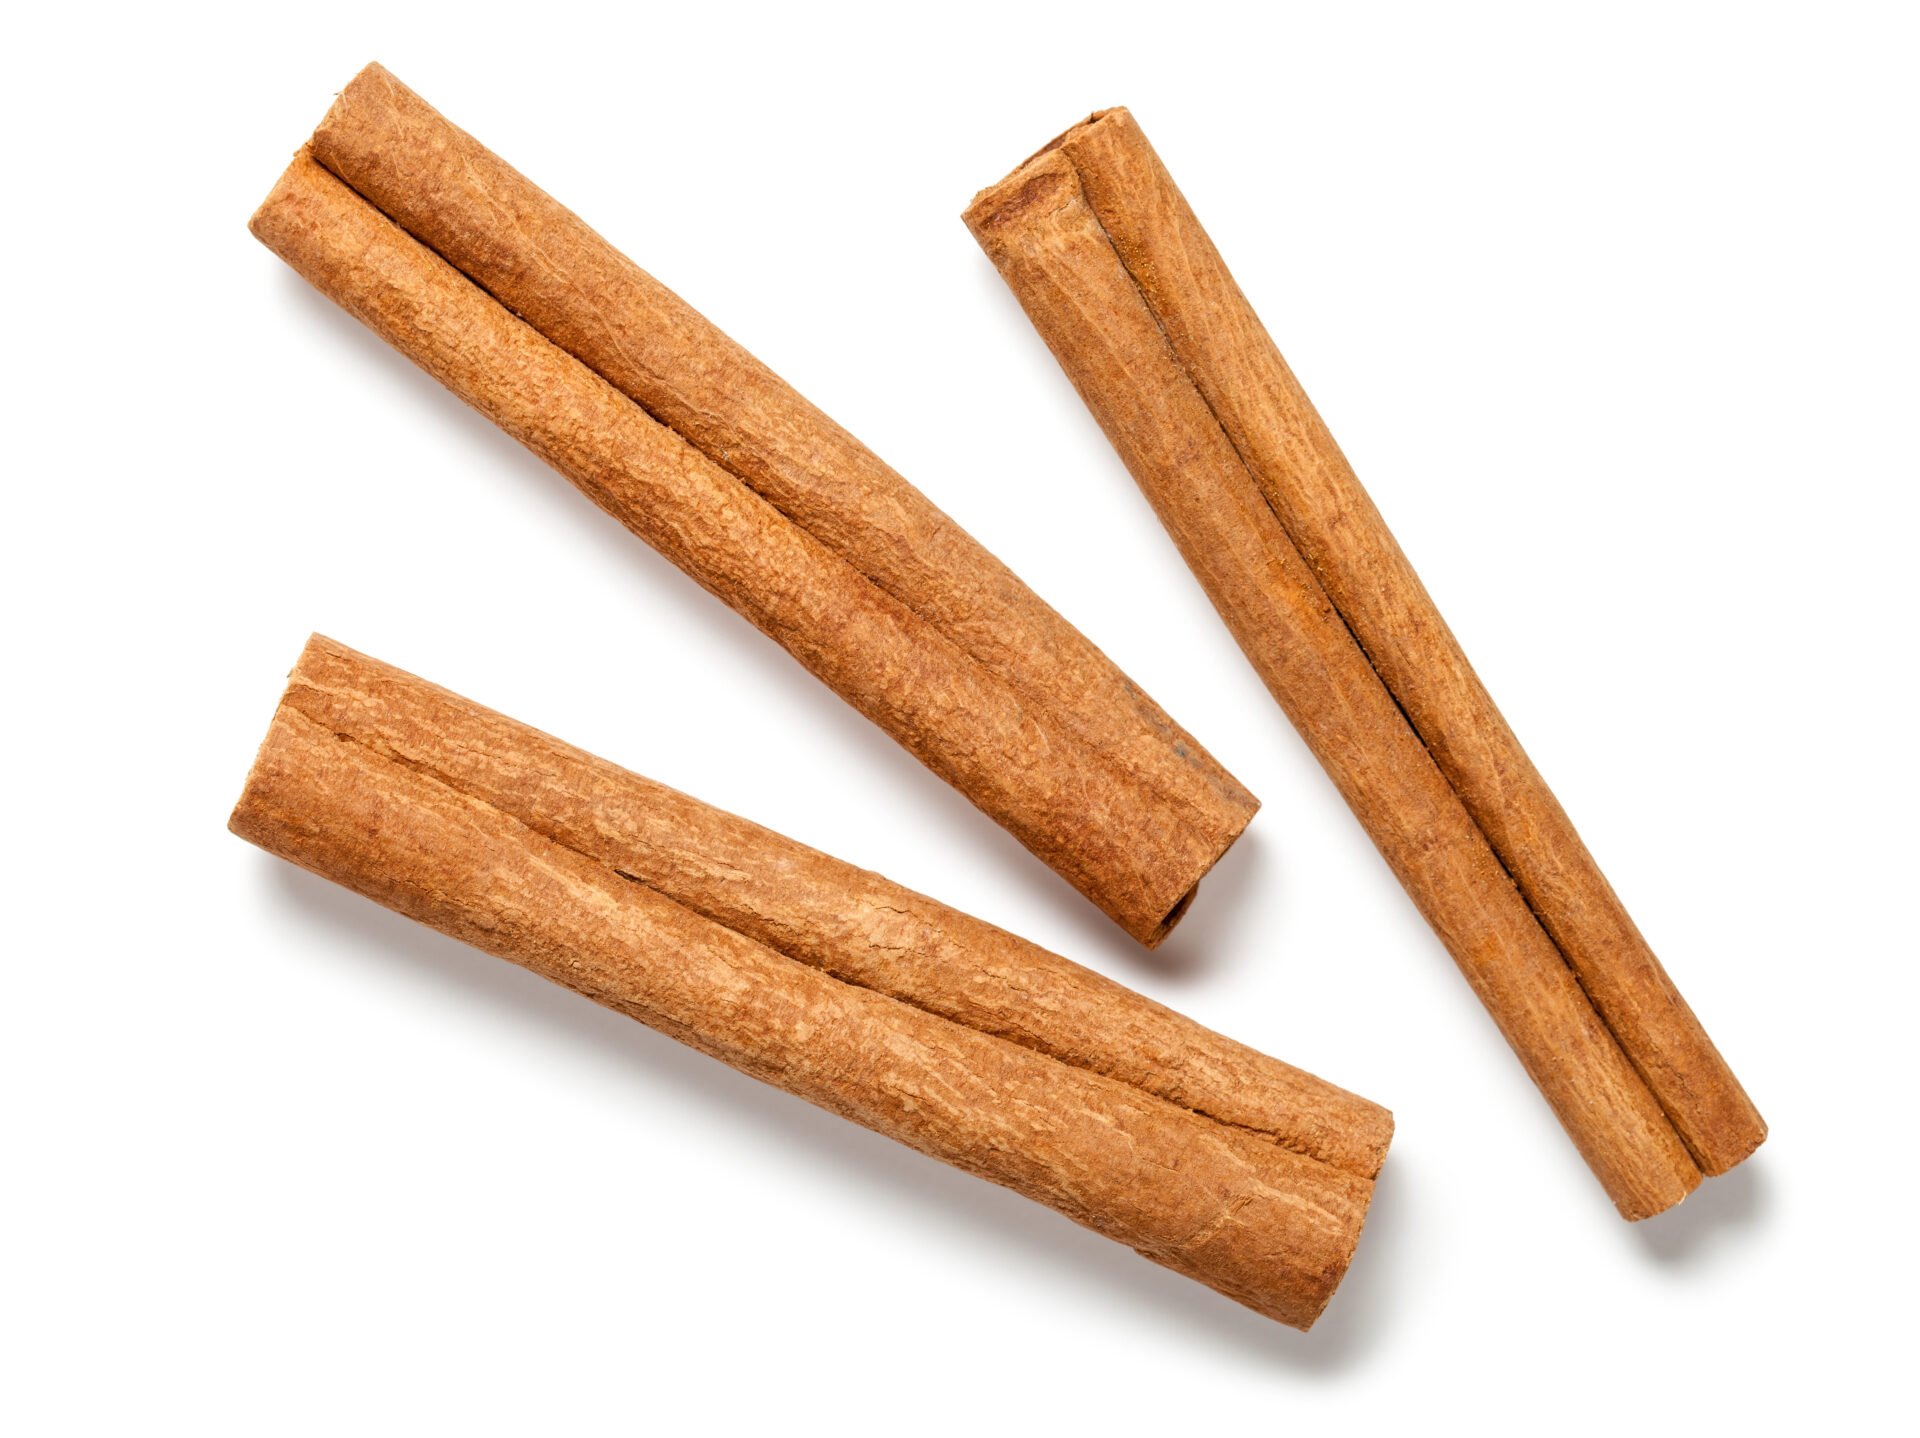 Cinnamon sticks tested for lead & cadmium & glyphosate